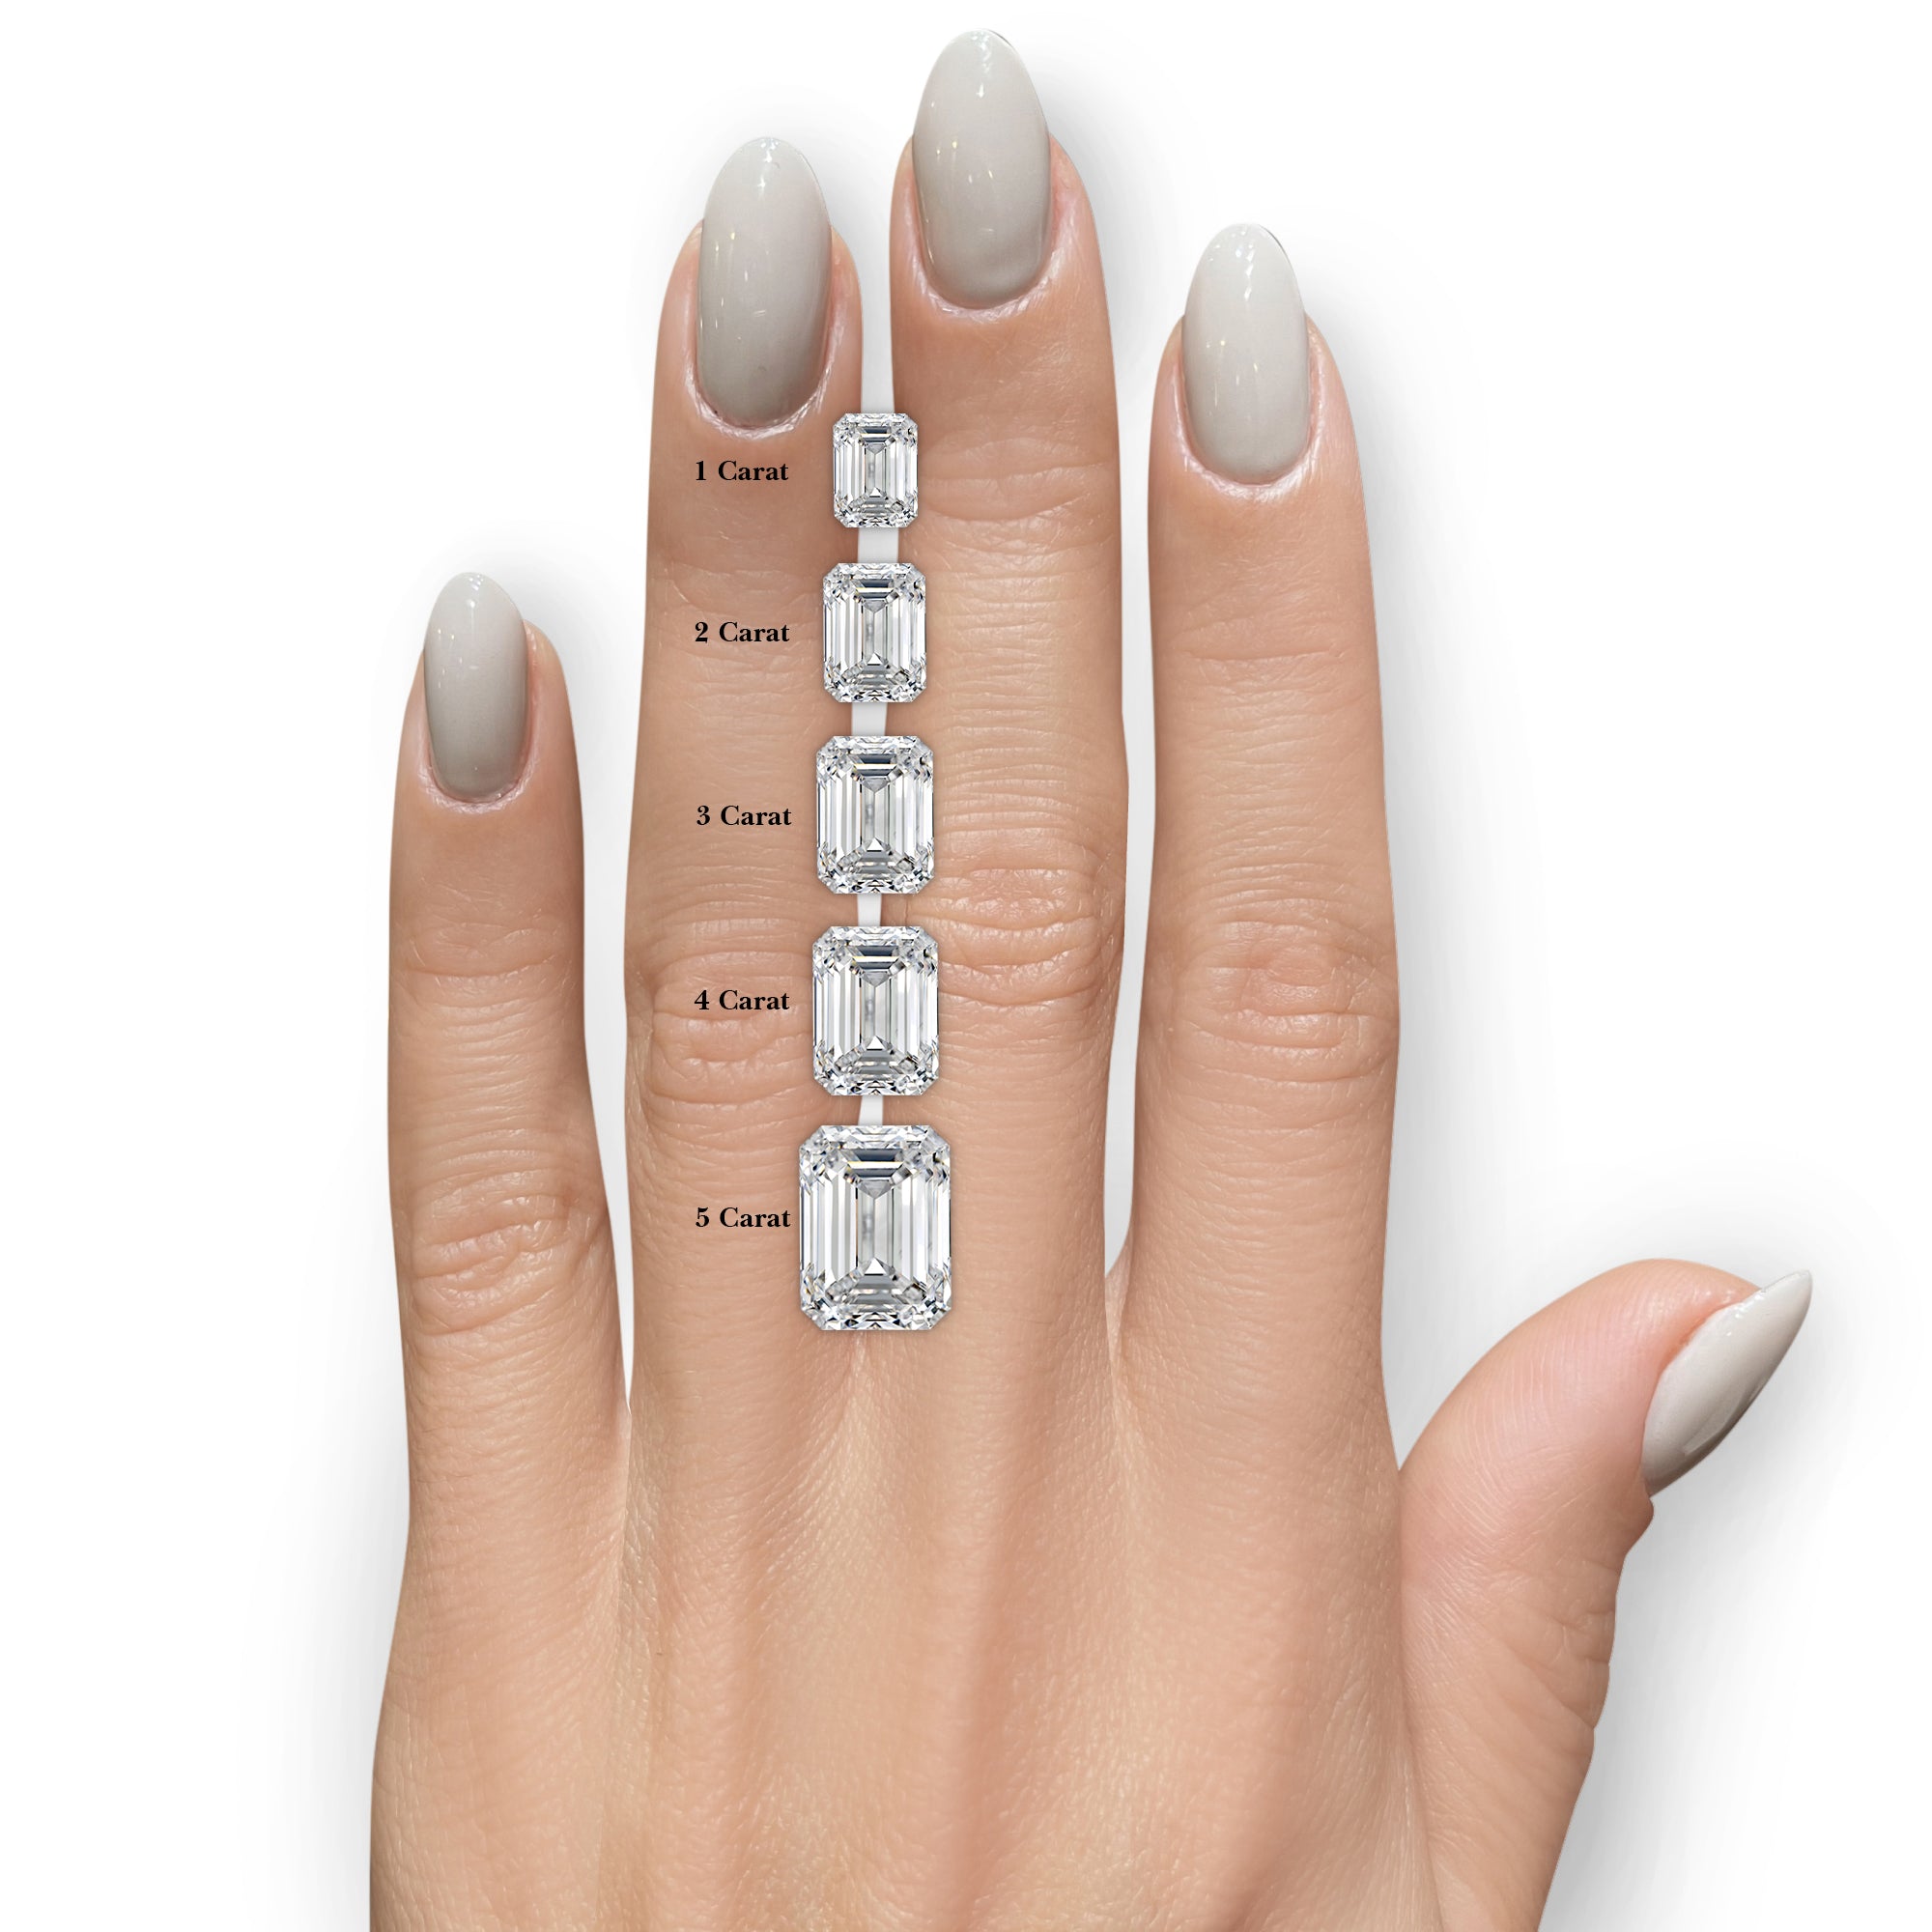 Royal Lab Grown Diamond Ring -18K White Gold